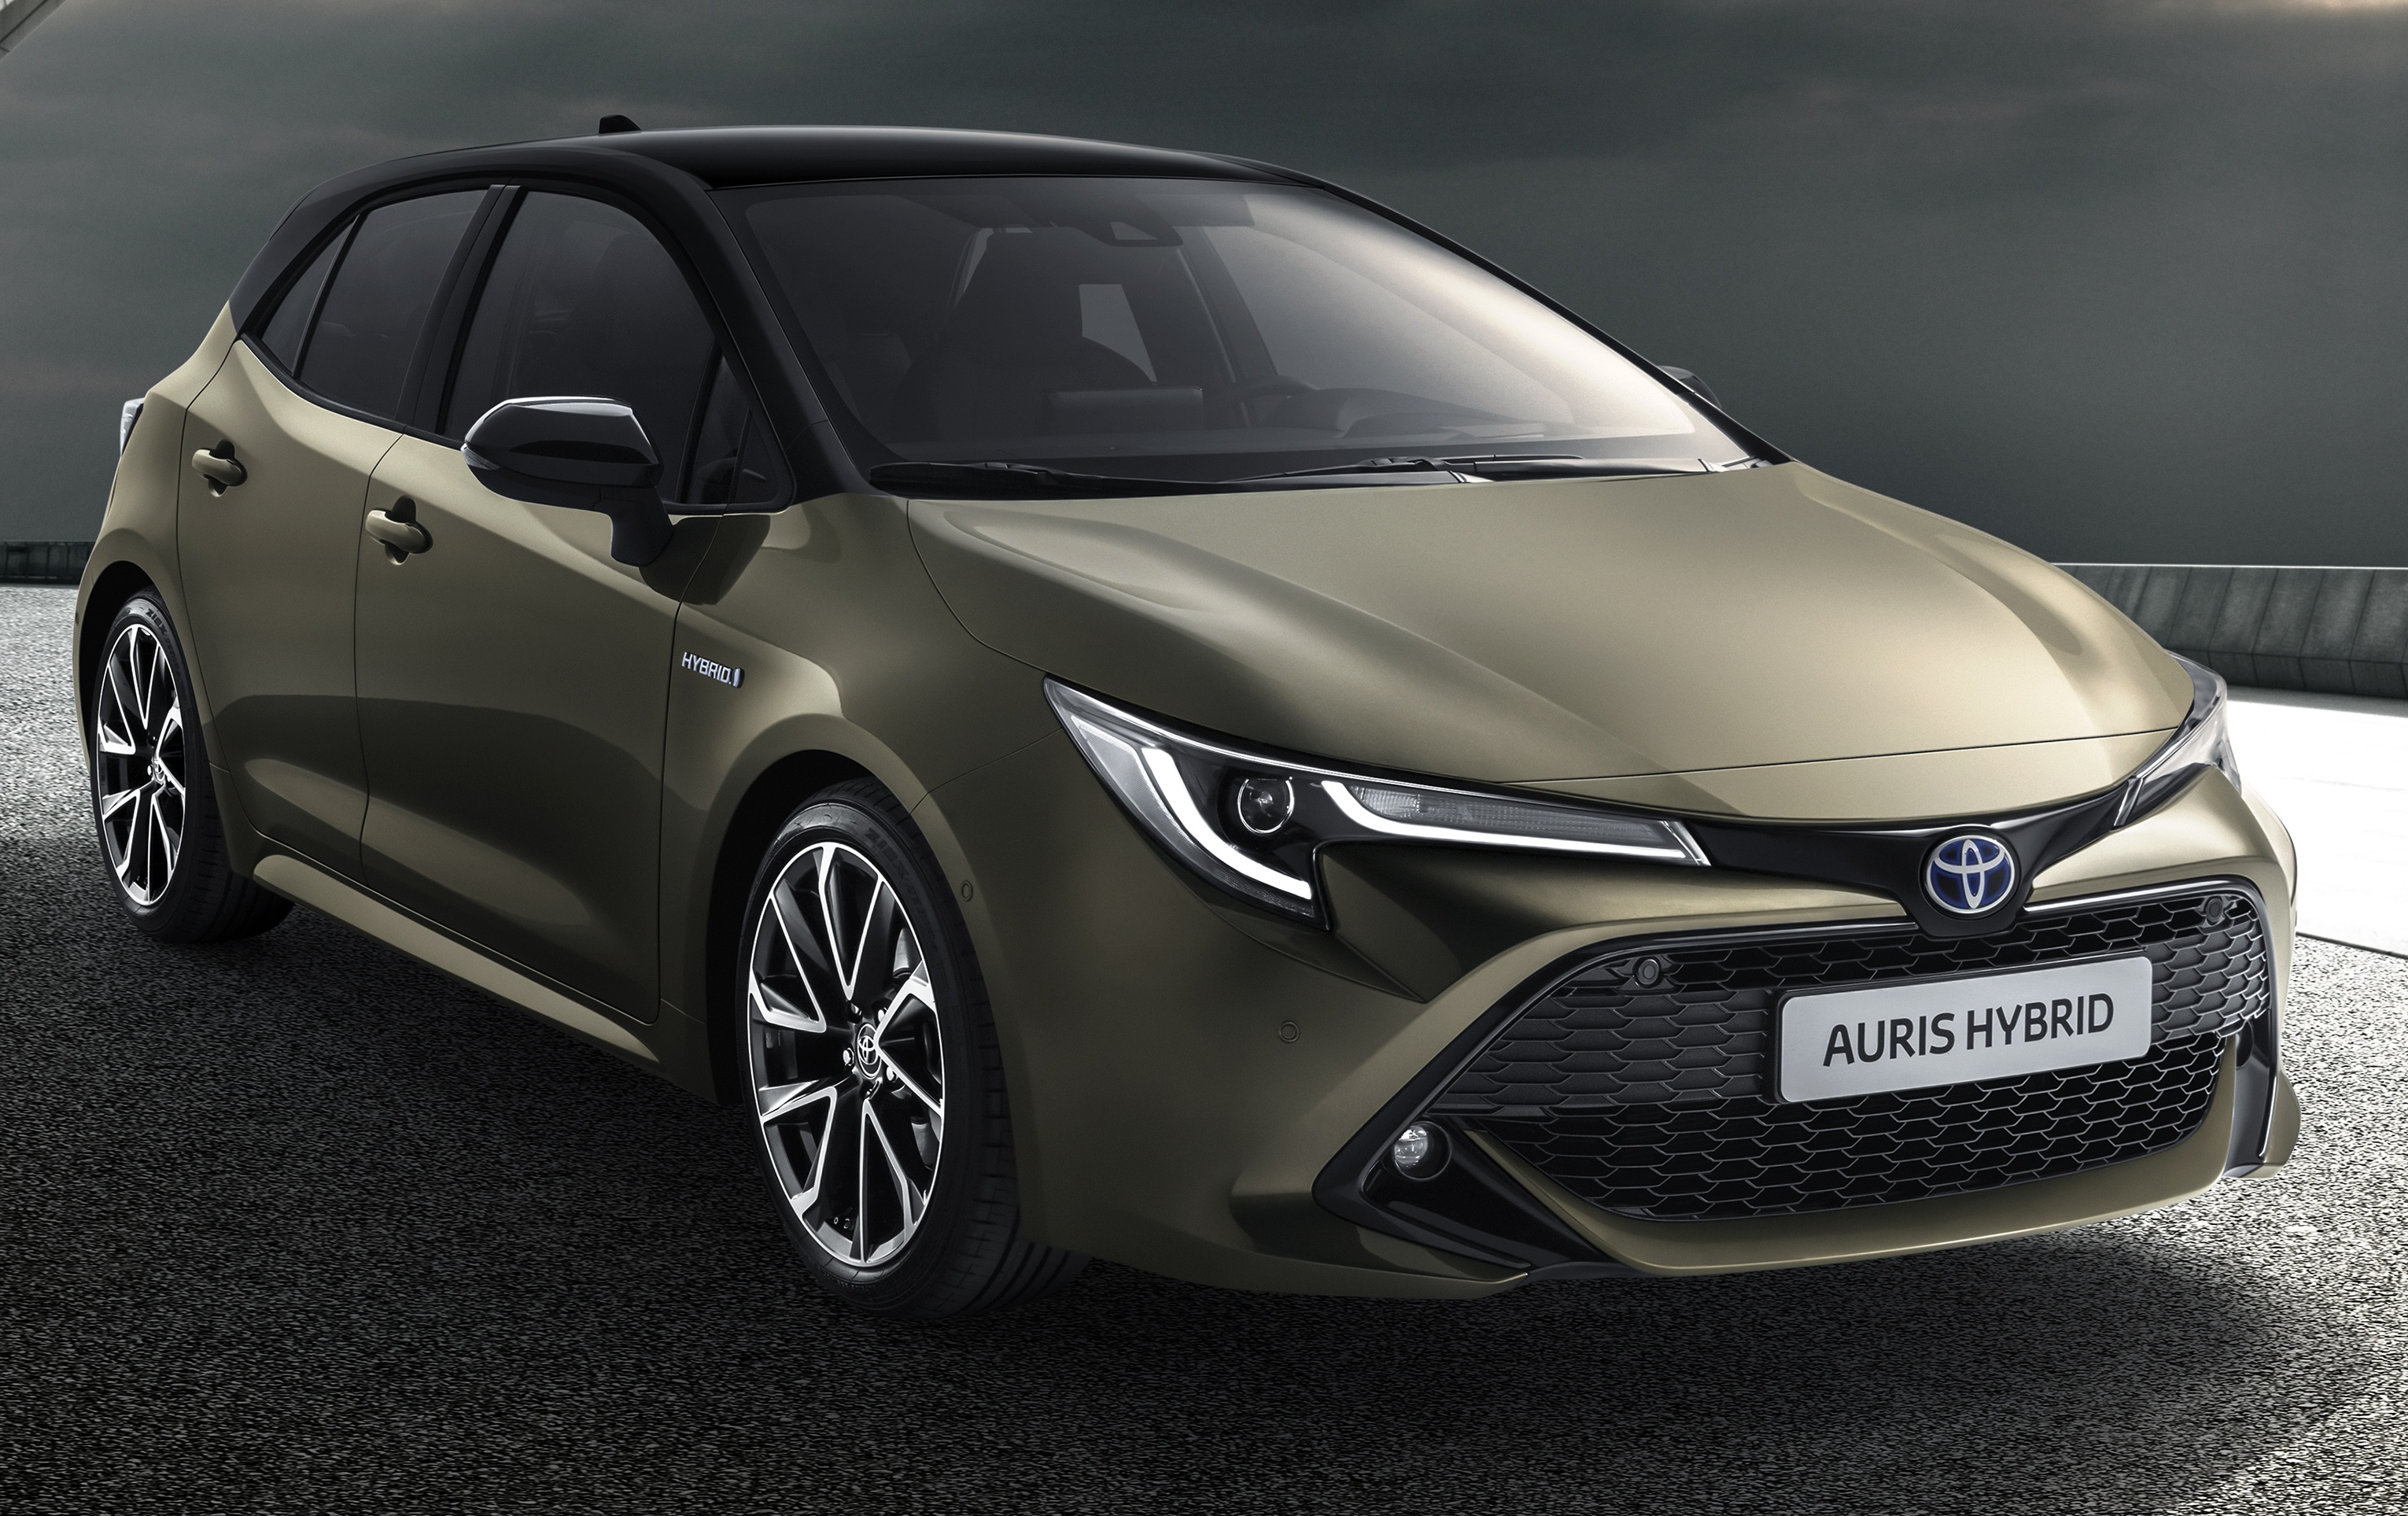 2018 Toyota Auris previewed new TNGA platform, 1.2 litre